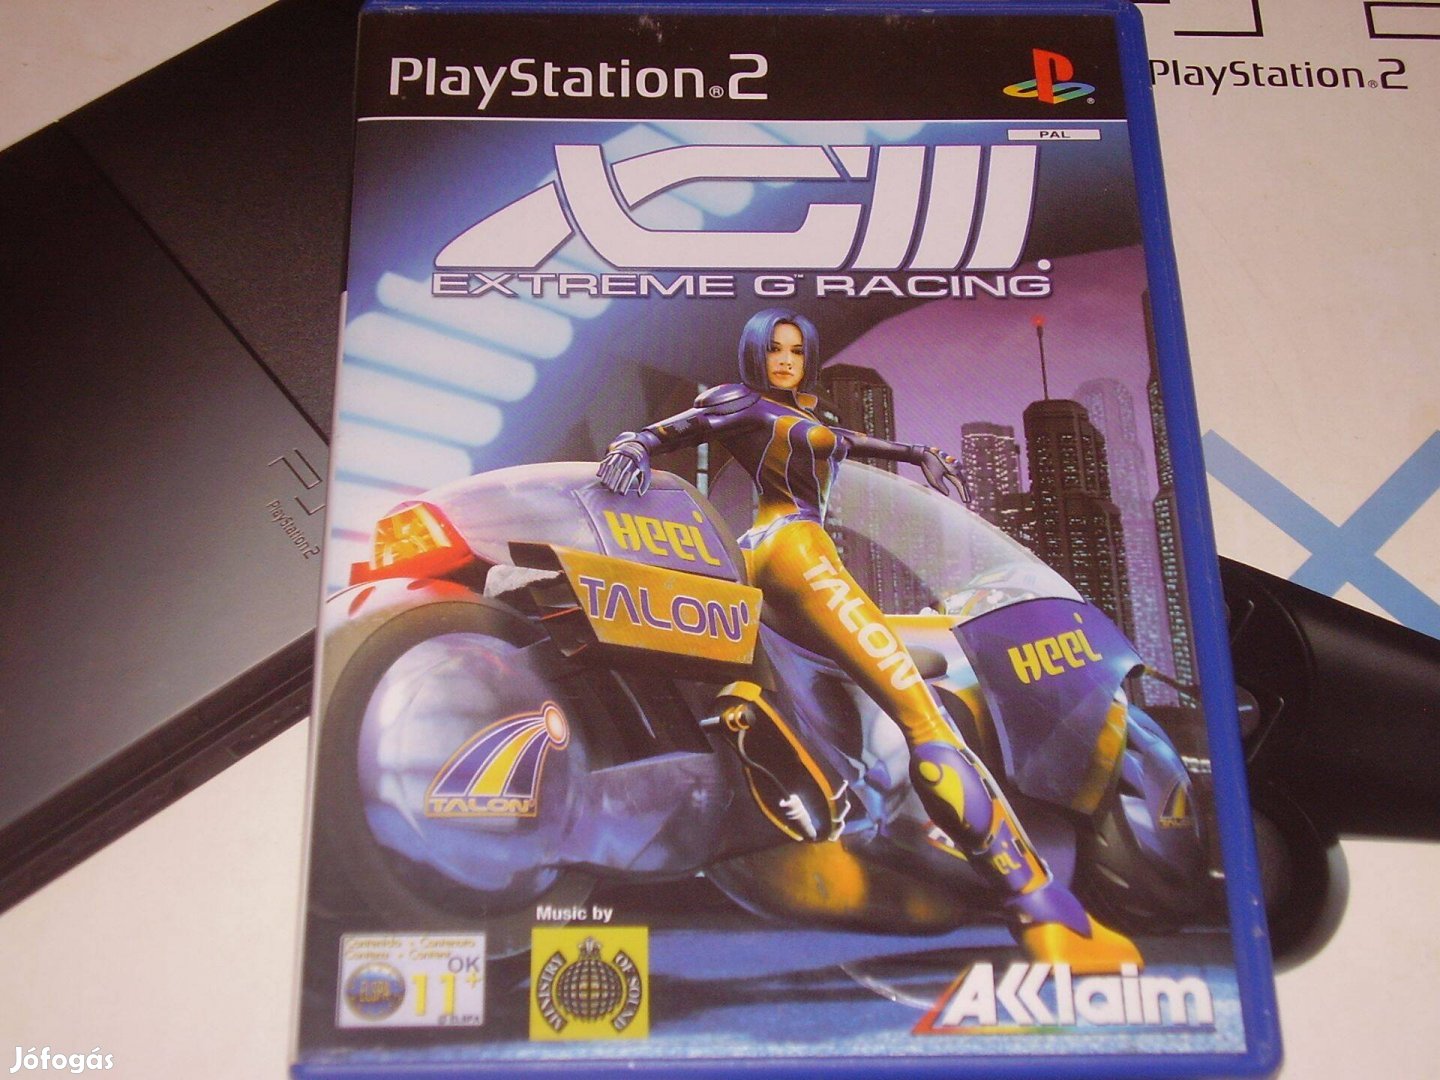 XG3 Extreme-G Racing Playstation 2 eredeti lemez eladó